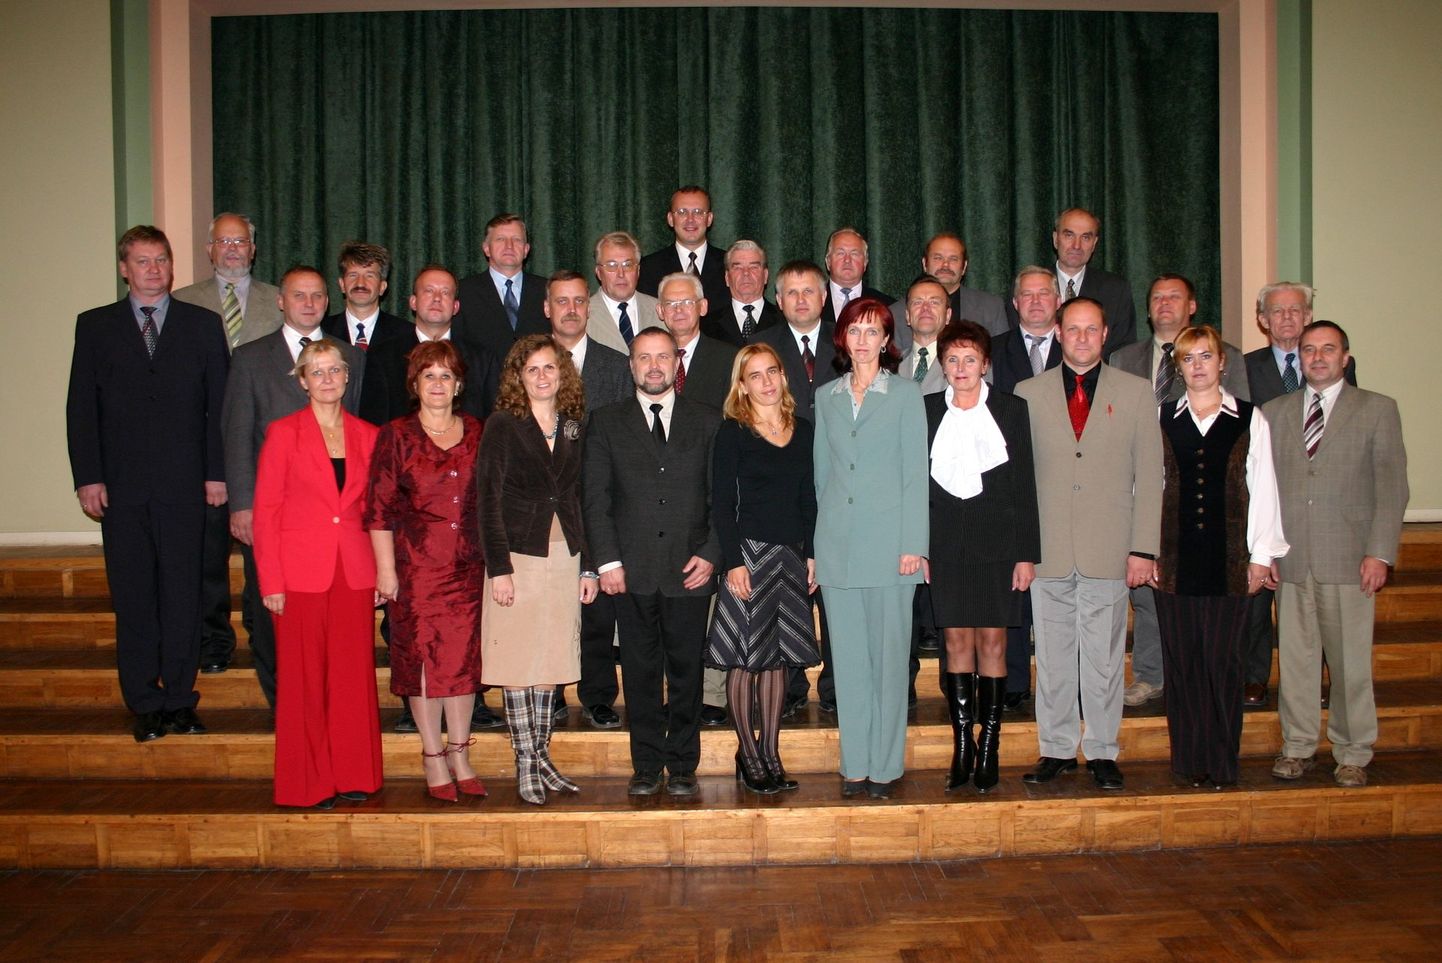 Arhiivifoto: Järvamaa omavalitsuste liidu volikogu ja koosseis 2005. aastal